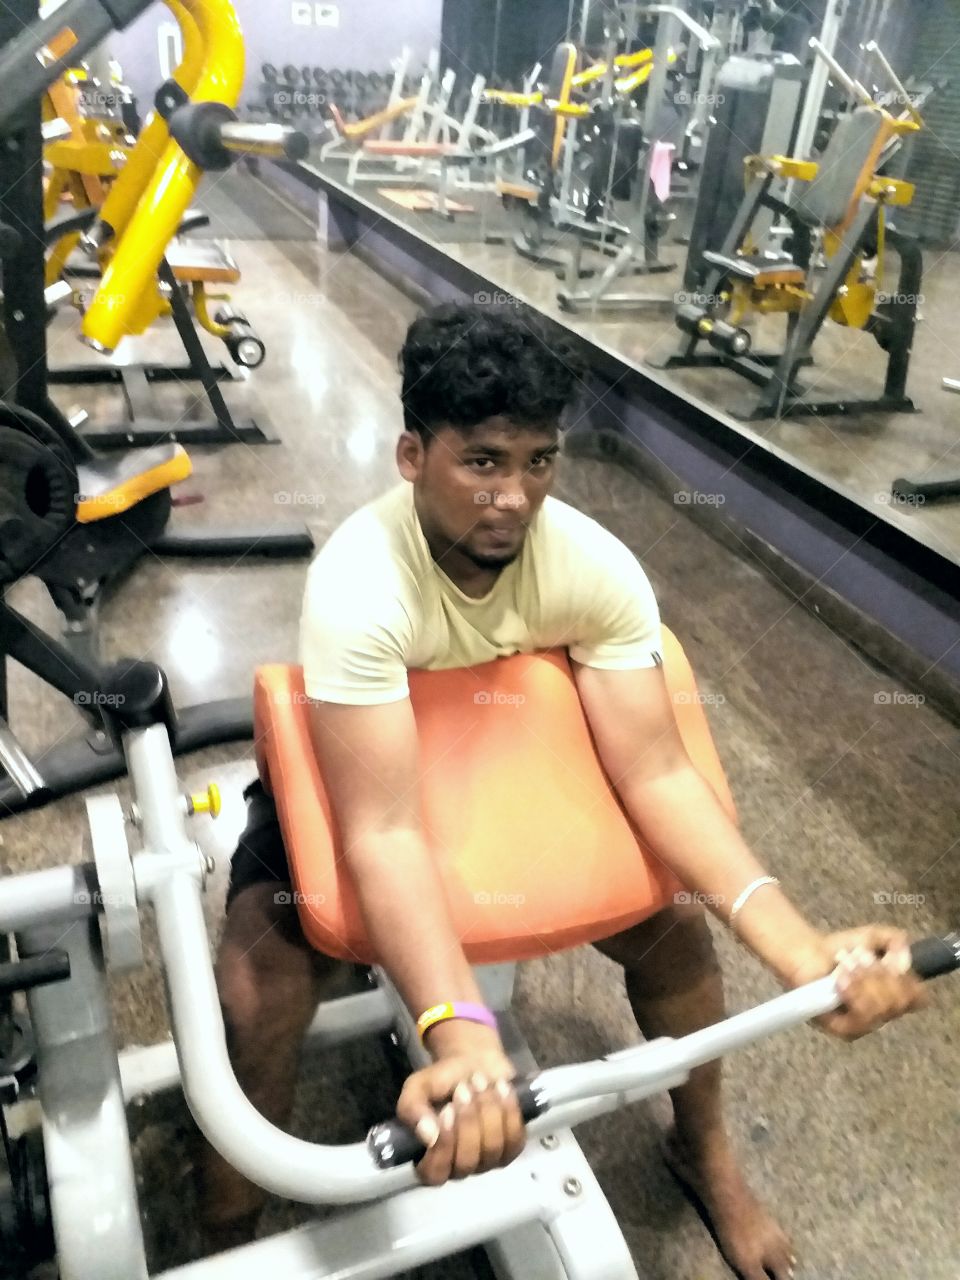 At Gym